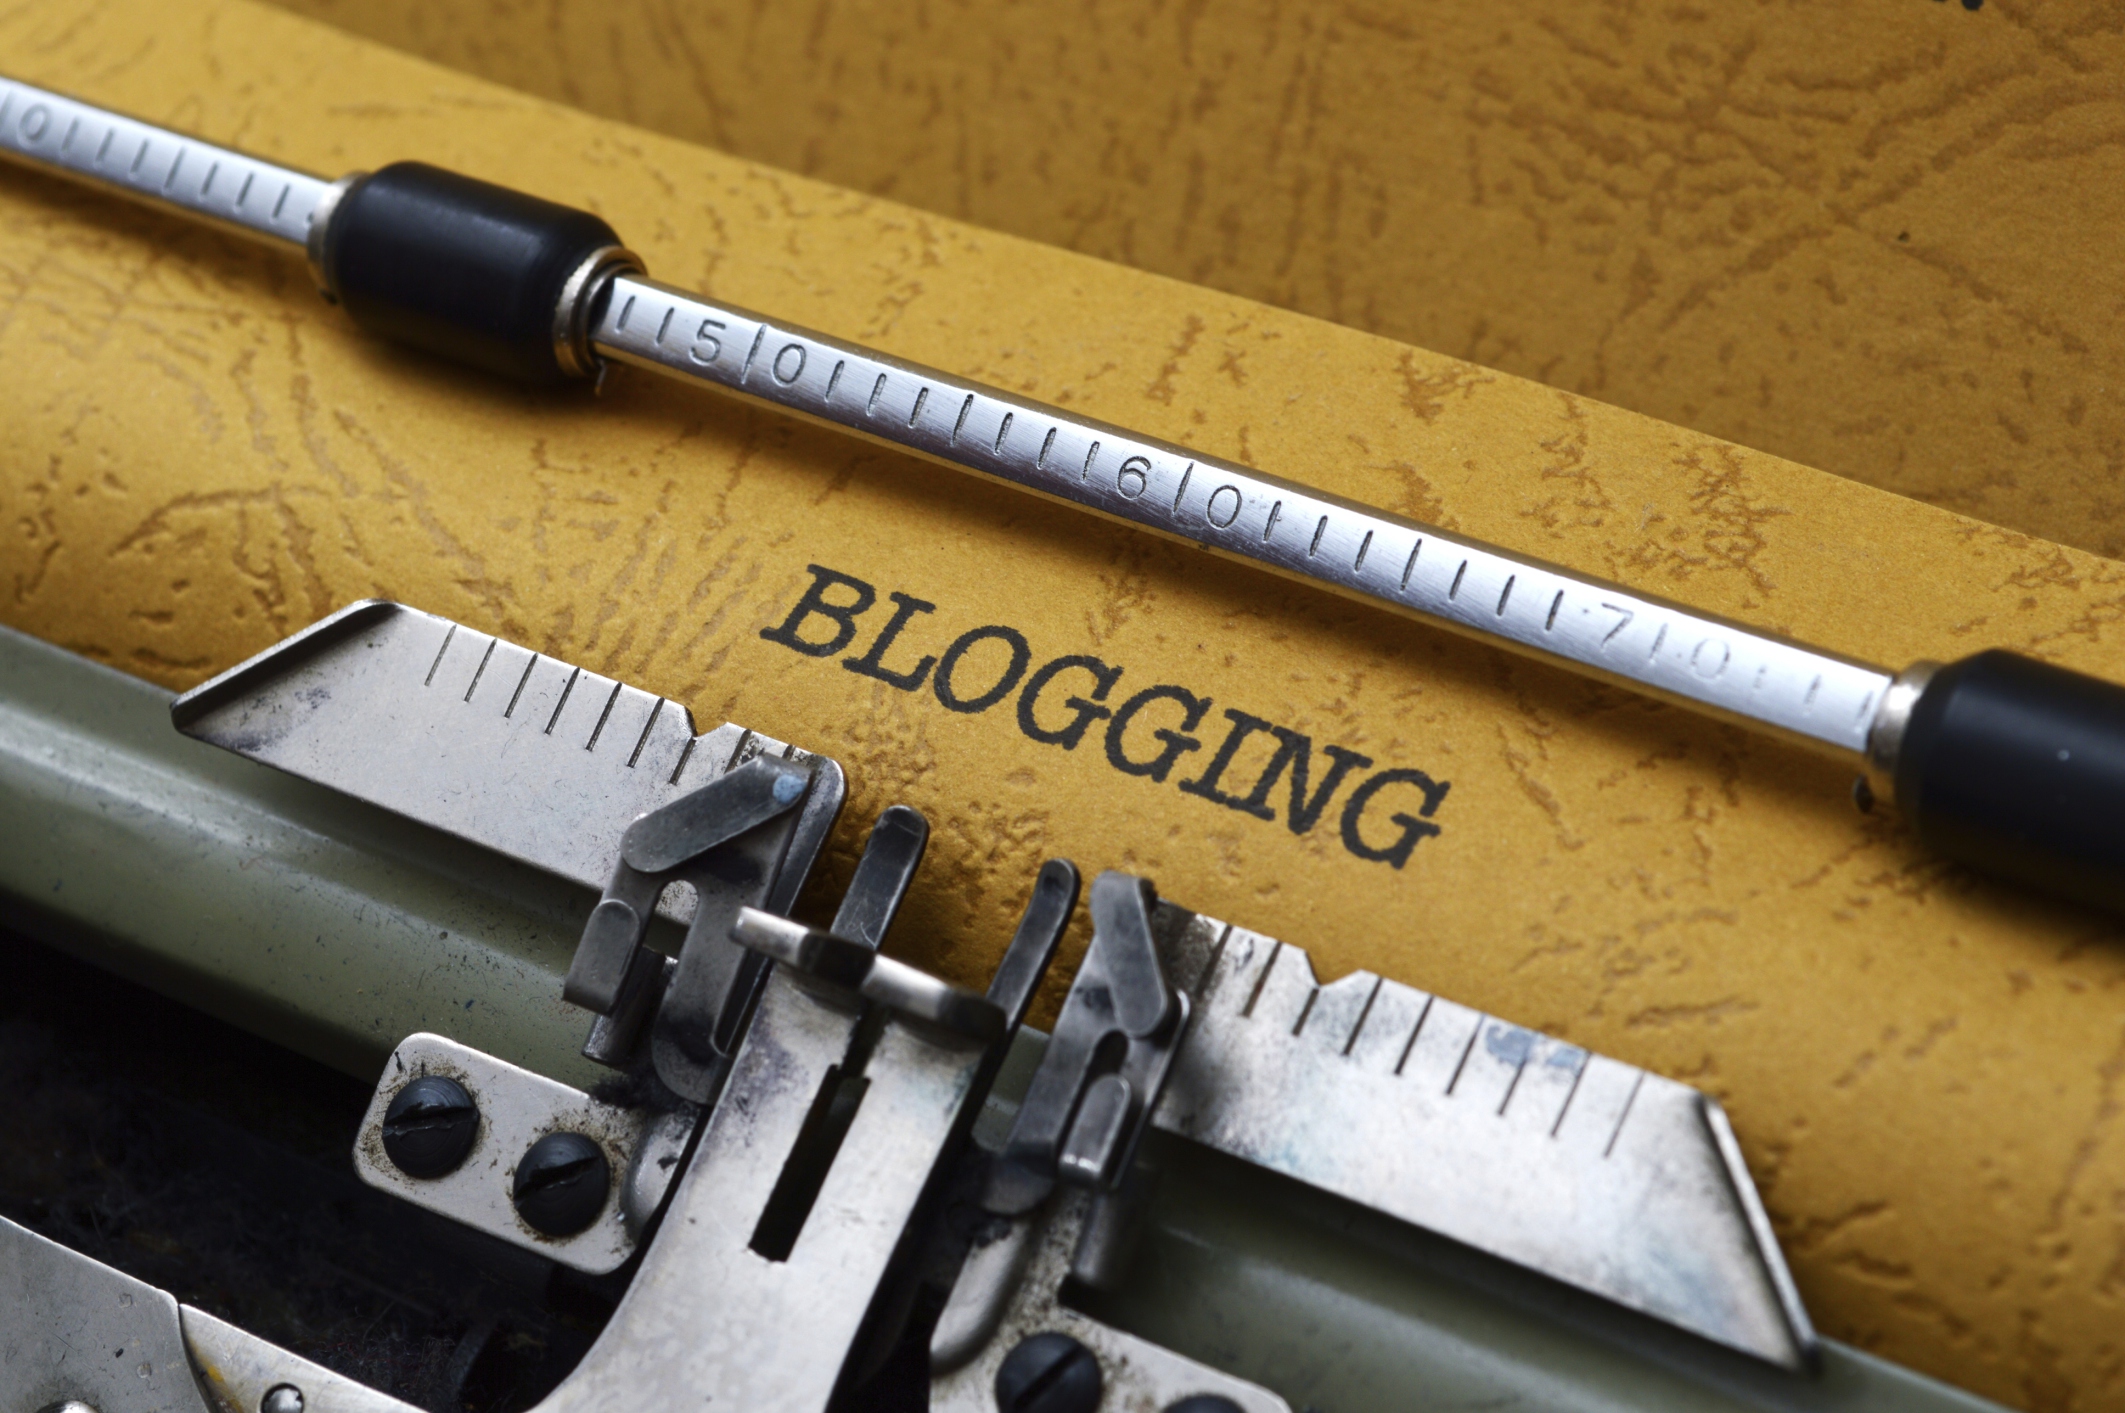 Blogging